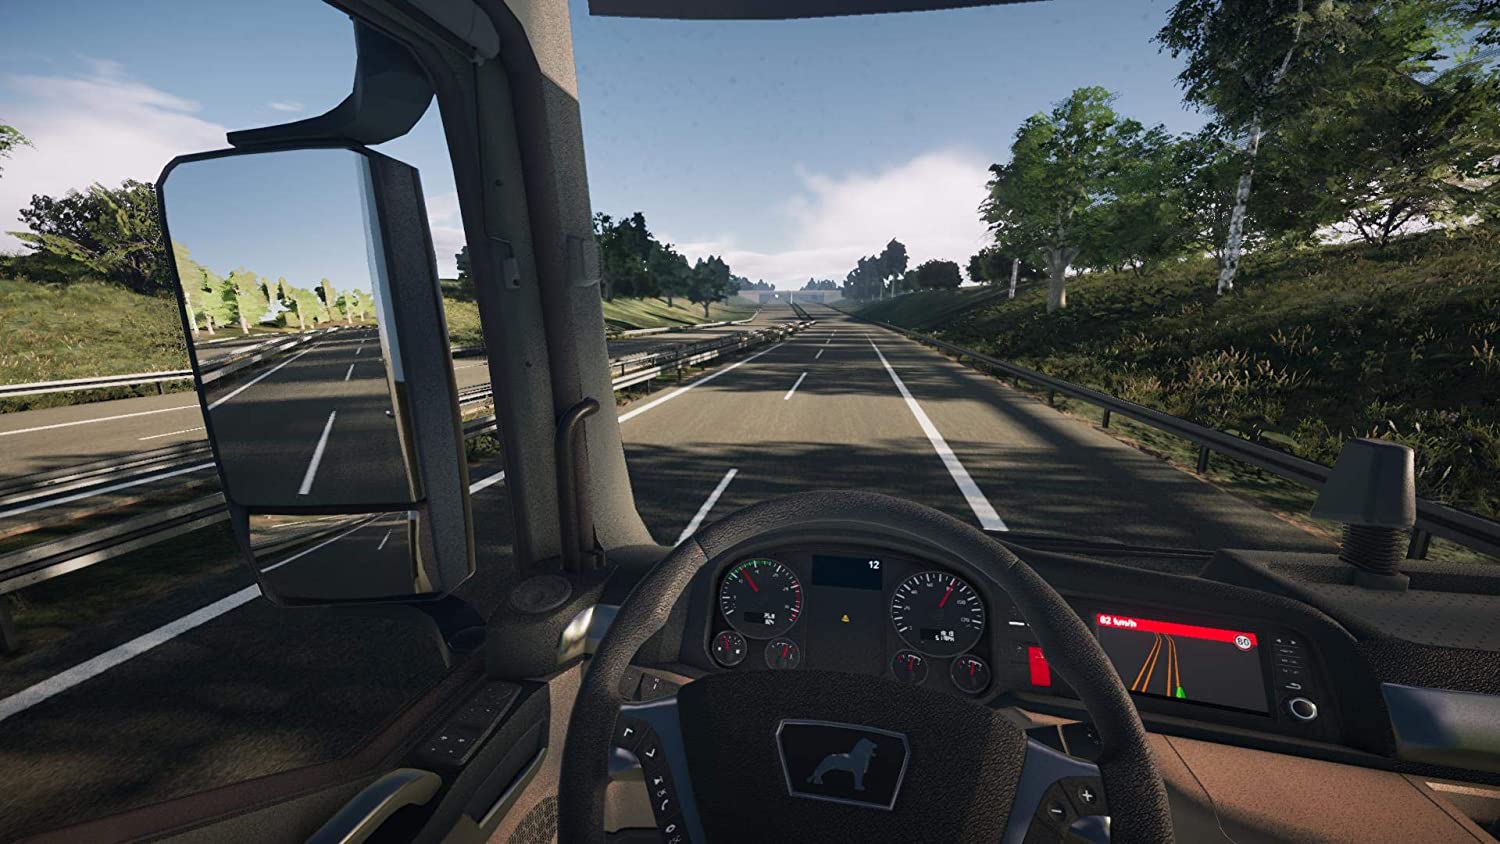 Игра симулятор 9. On the Road – Truck Simulation игра. Truck Simulator ps4. On the Road Truck Simulator для PLAYSTATION 4. Евро трак симулятор на ПС 4.